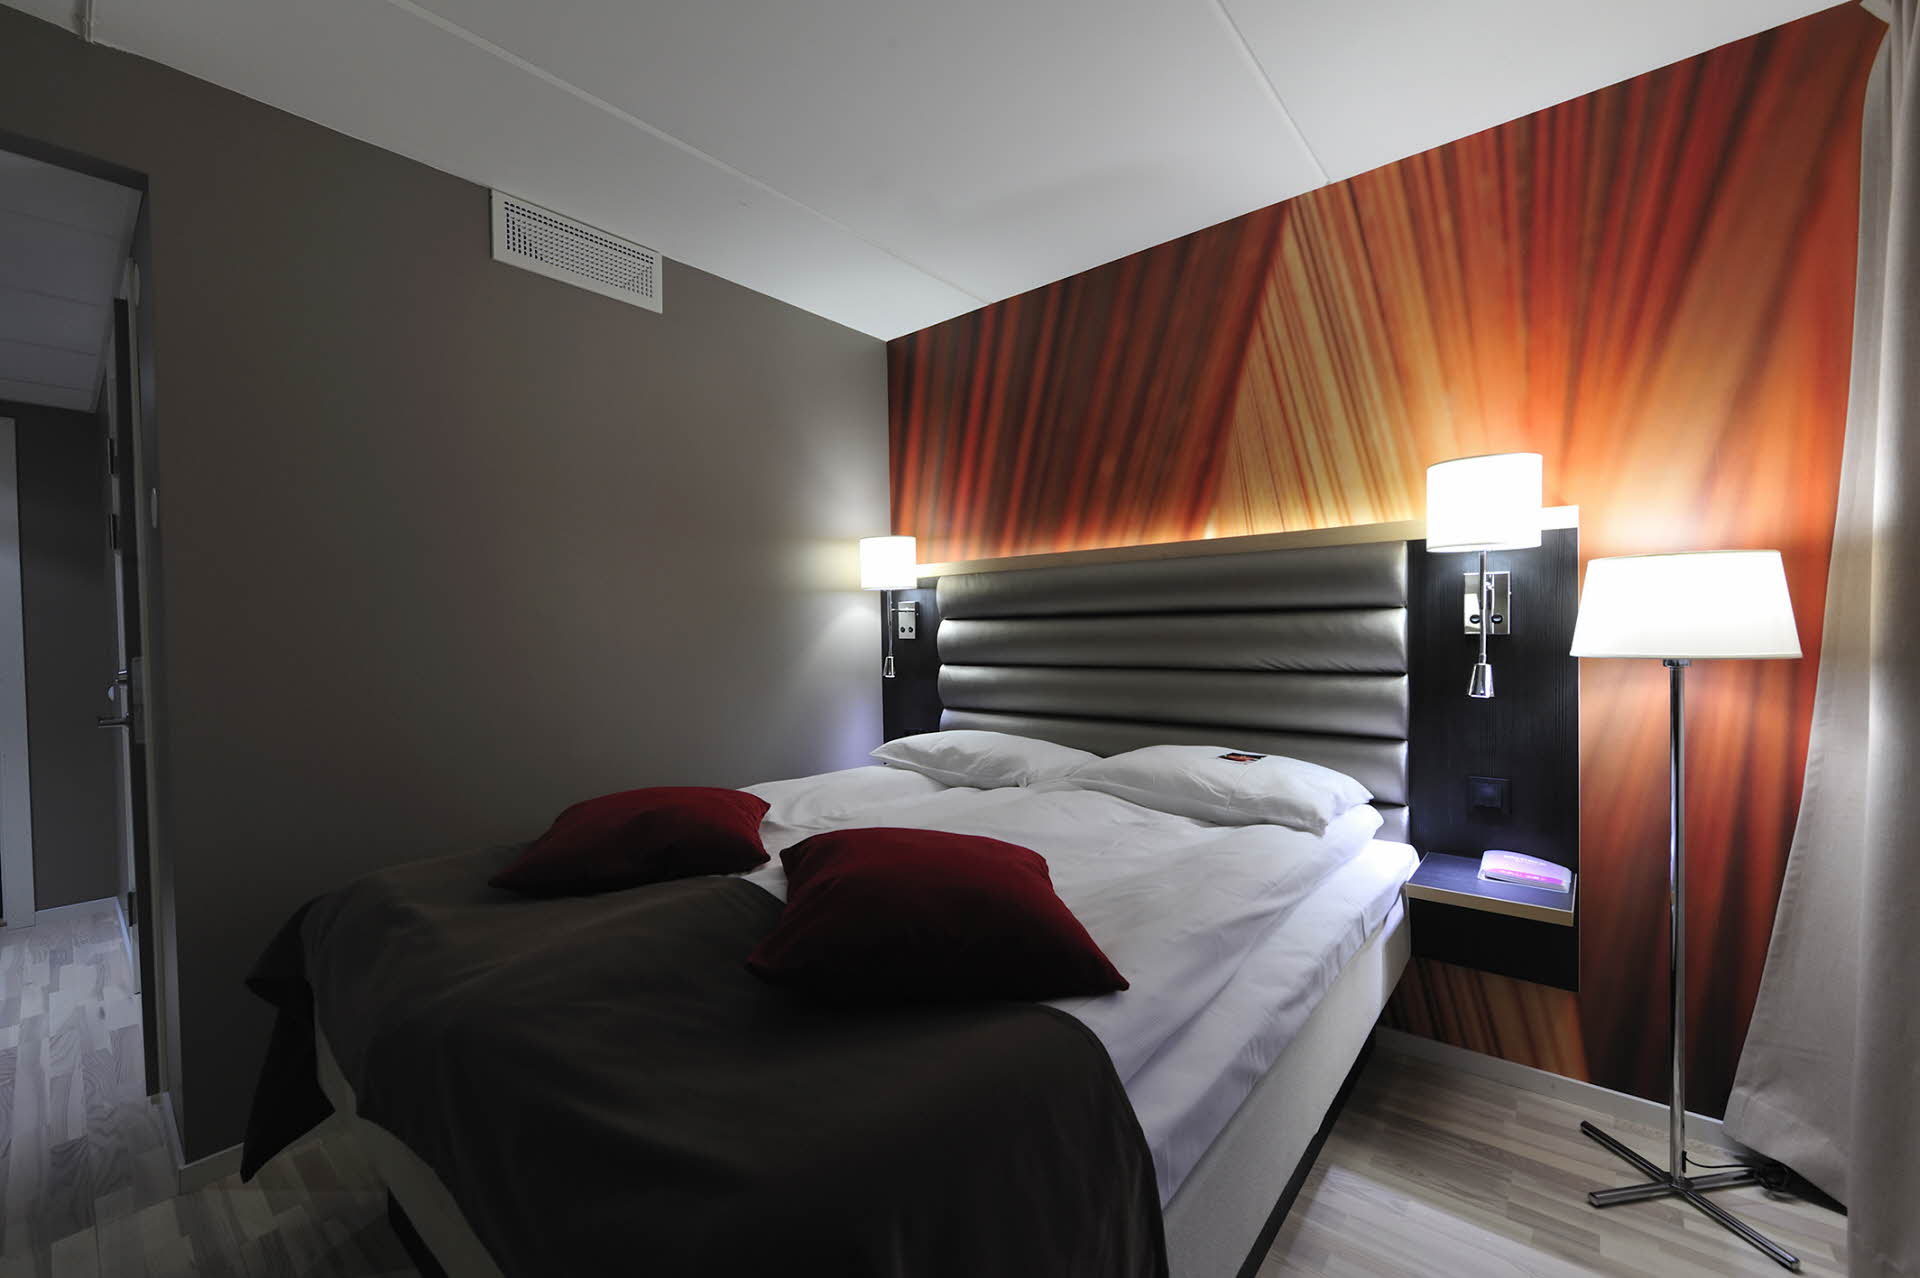 双人床、灯具、五颜六色的墙壁和红色装饰枕头。 